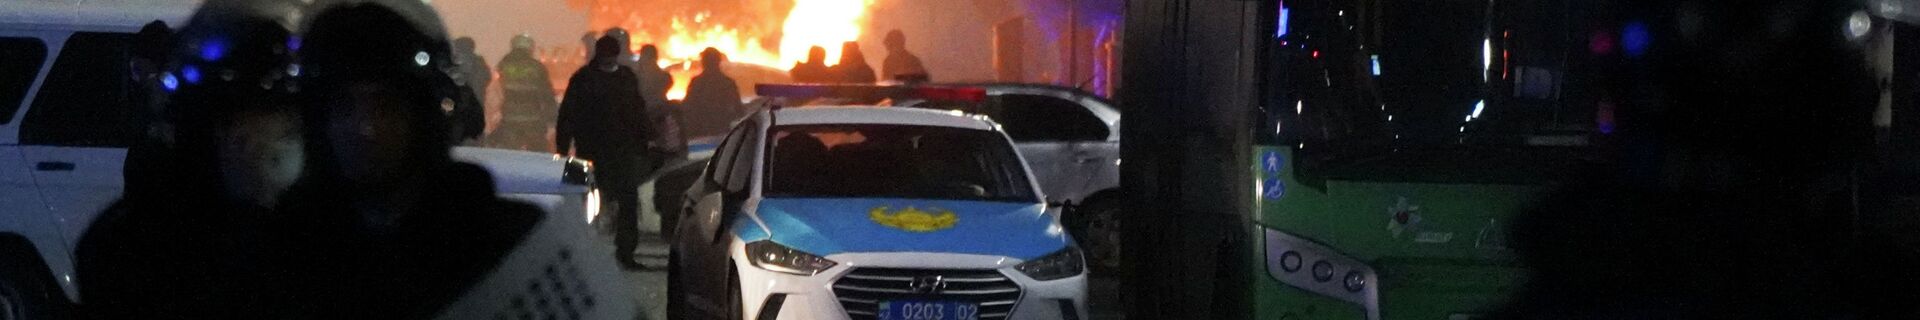 Полицейские в огне во время столкновений с протестующими в центре Алматы, Казахстан, среда, 5 января 2022 г.  - Sputnik Казахстан, 1920, 21.02.2022